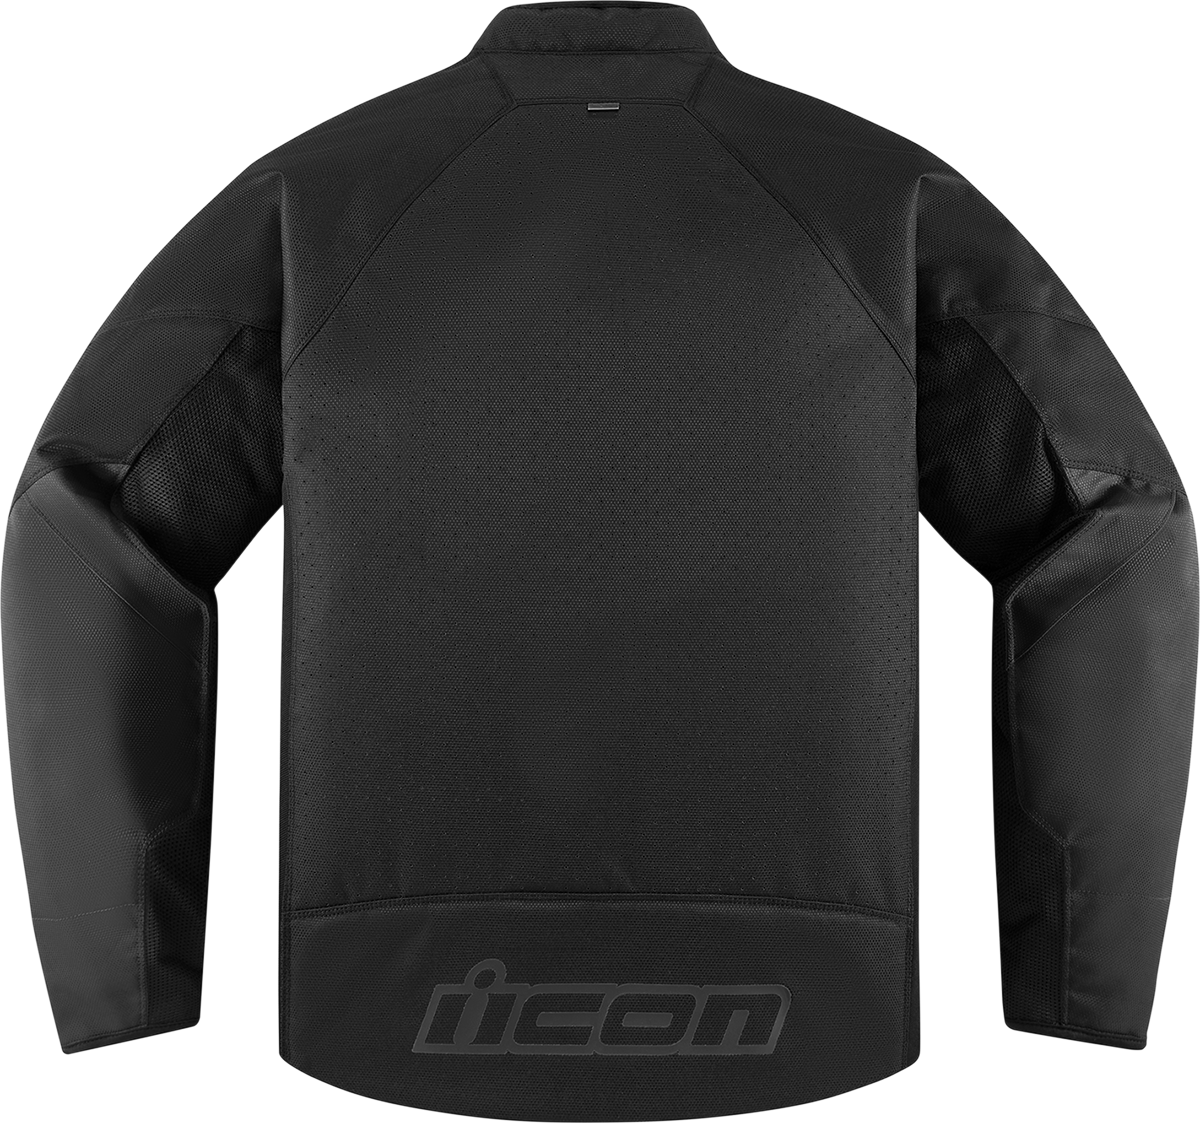 ICON Hooligan™ CE Jacket - Black - Large 2820-5793